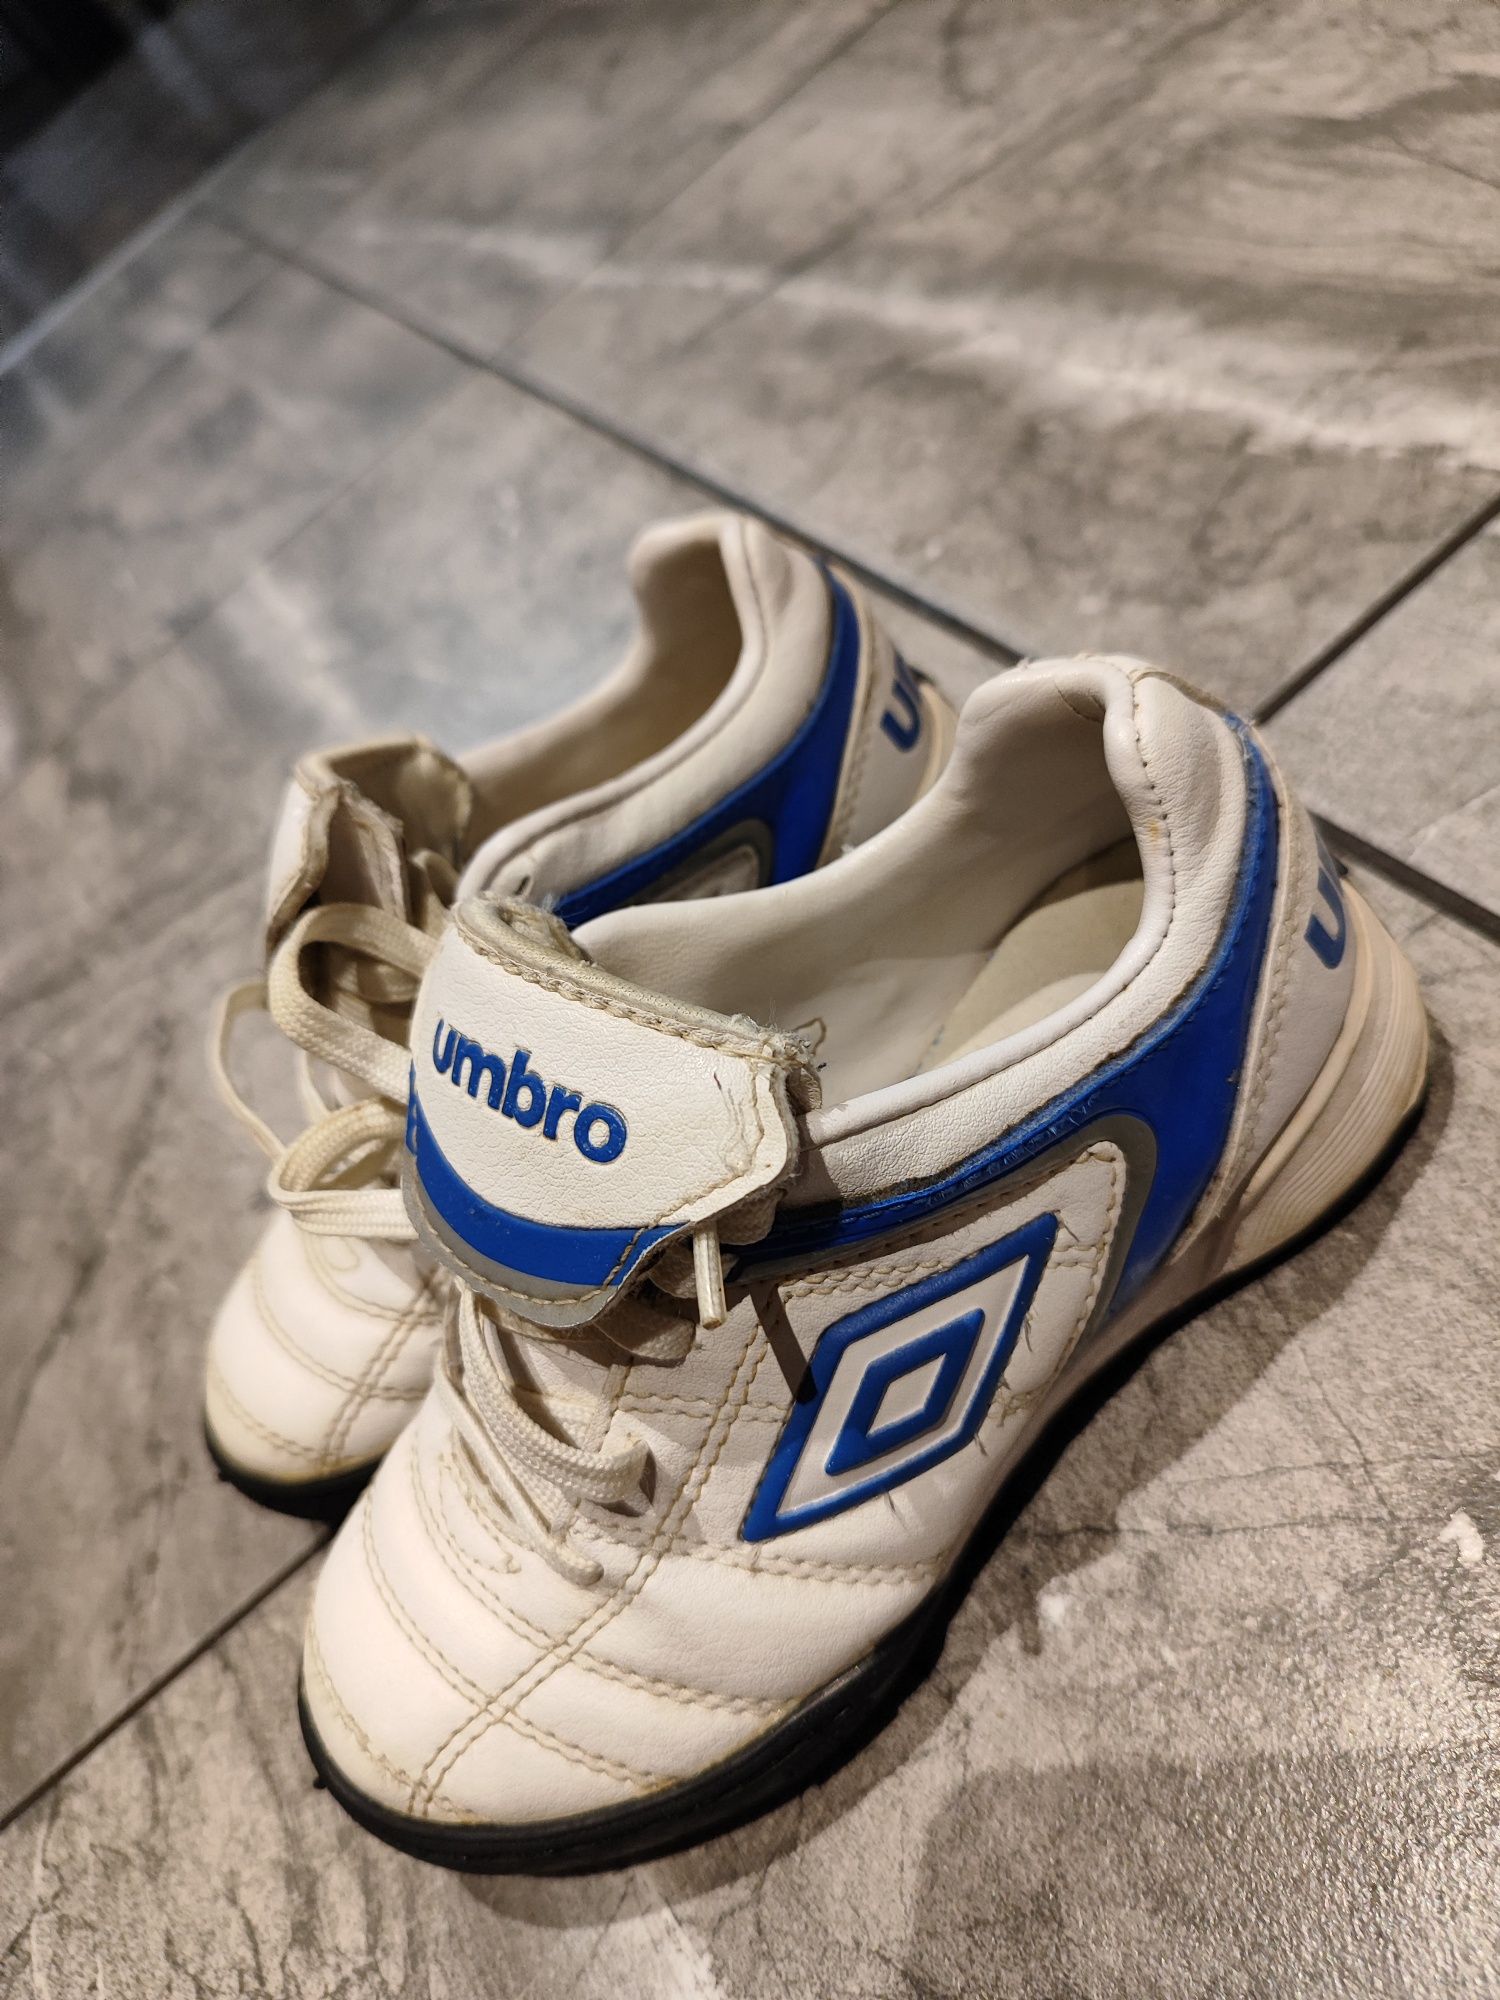 Turfy Umbro rozmiar 28 buty piłkarskie